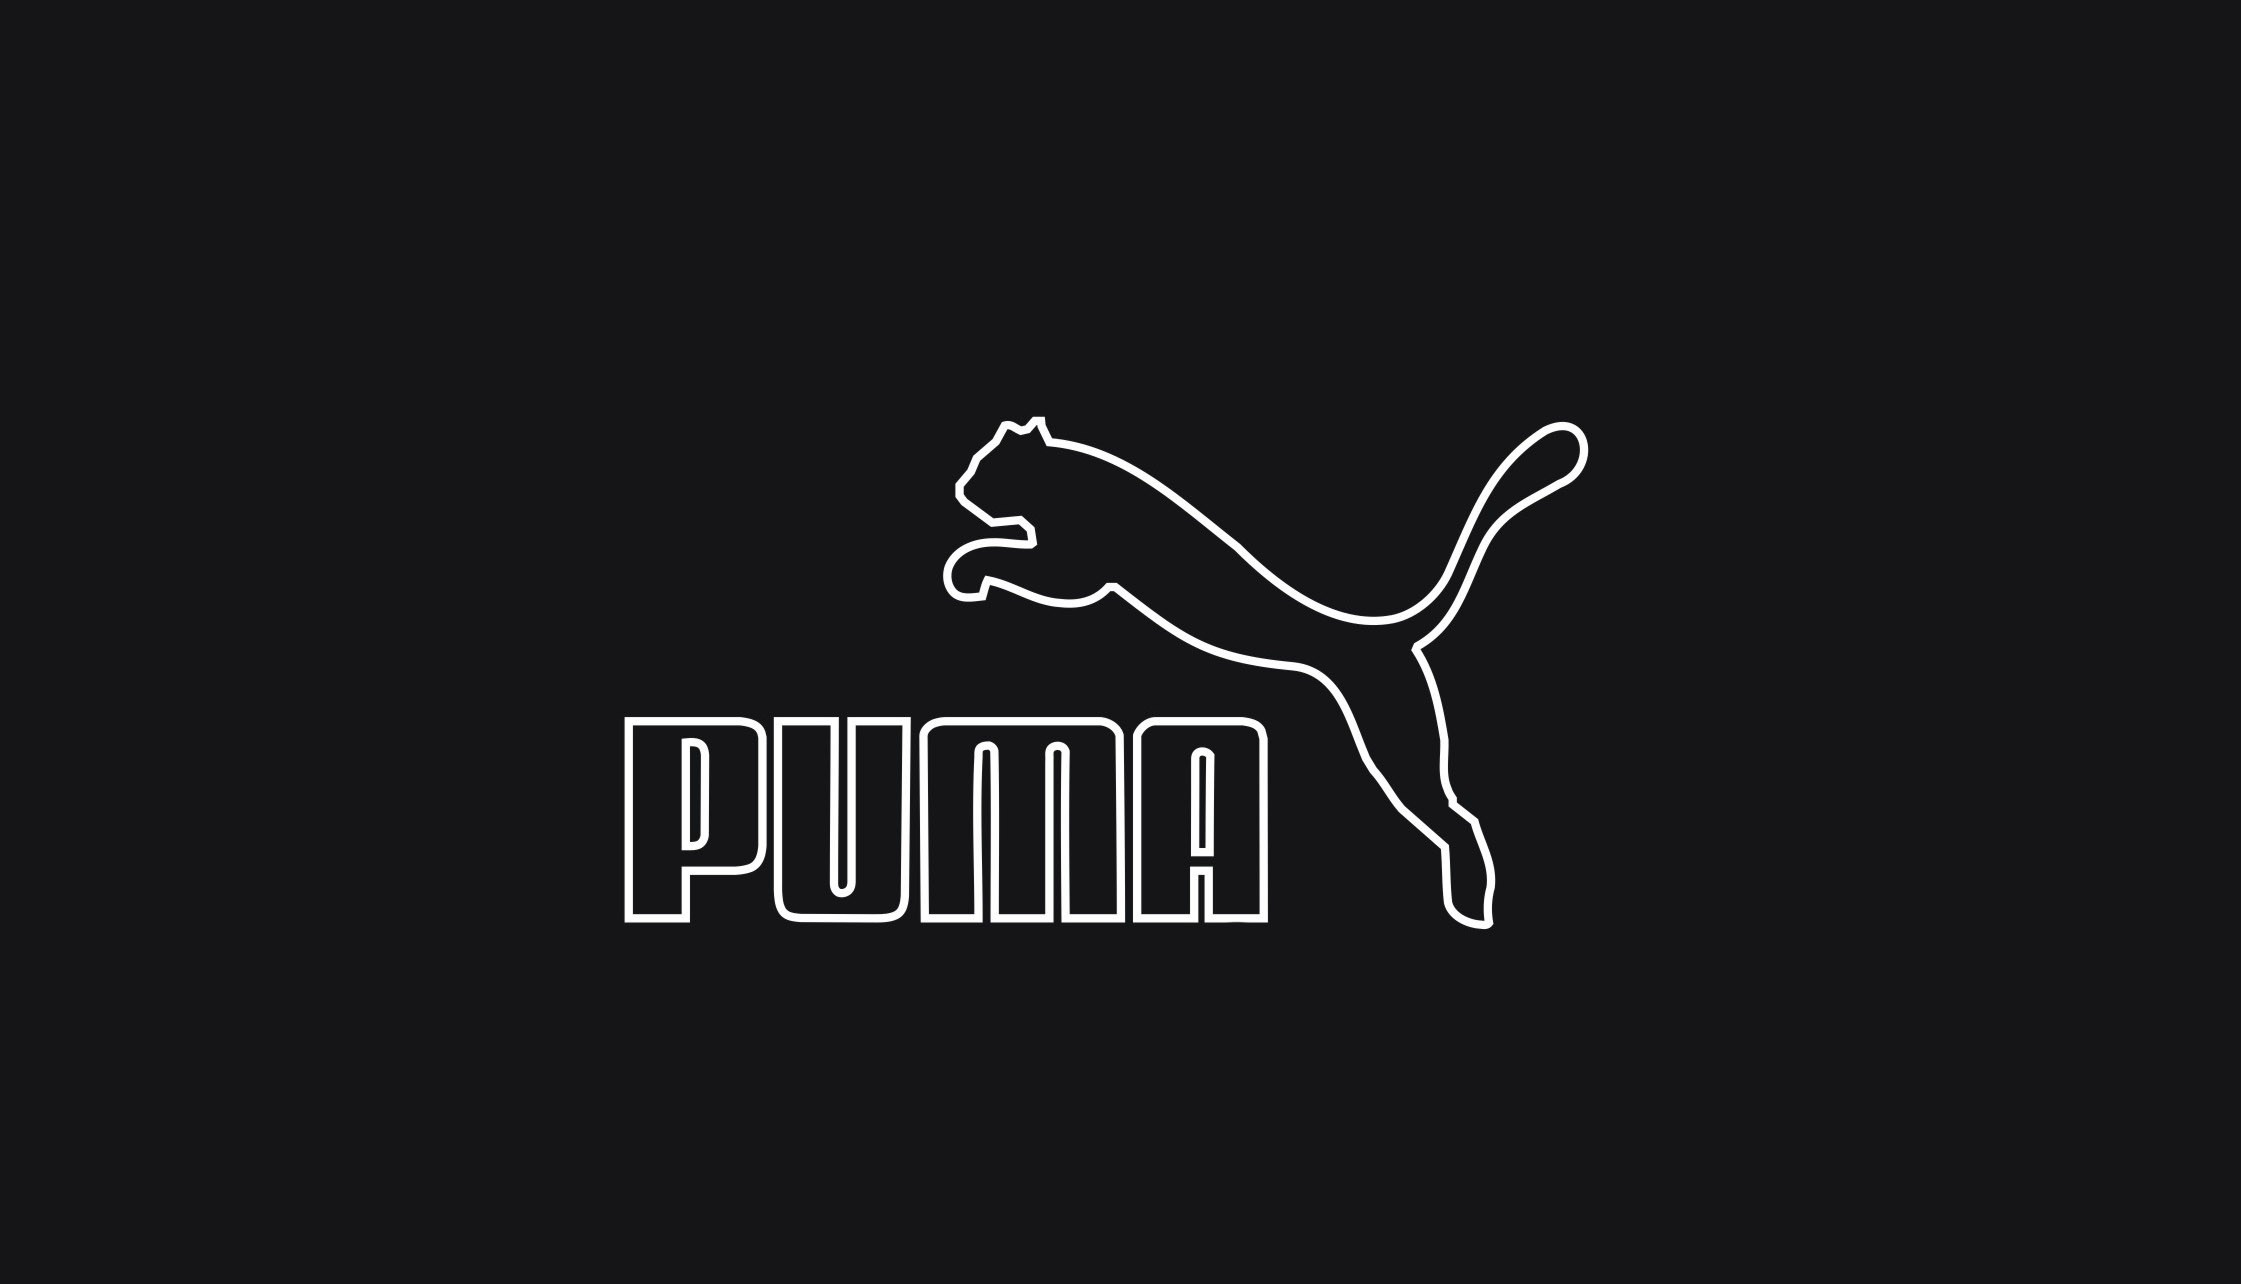 2241x1284 Puma Sports Brand Logo Full HD Wallpapers